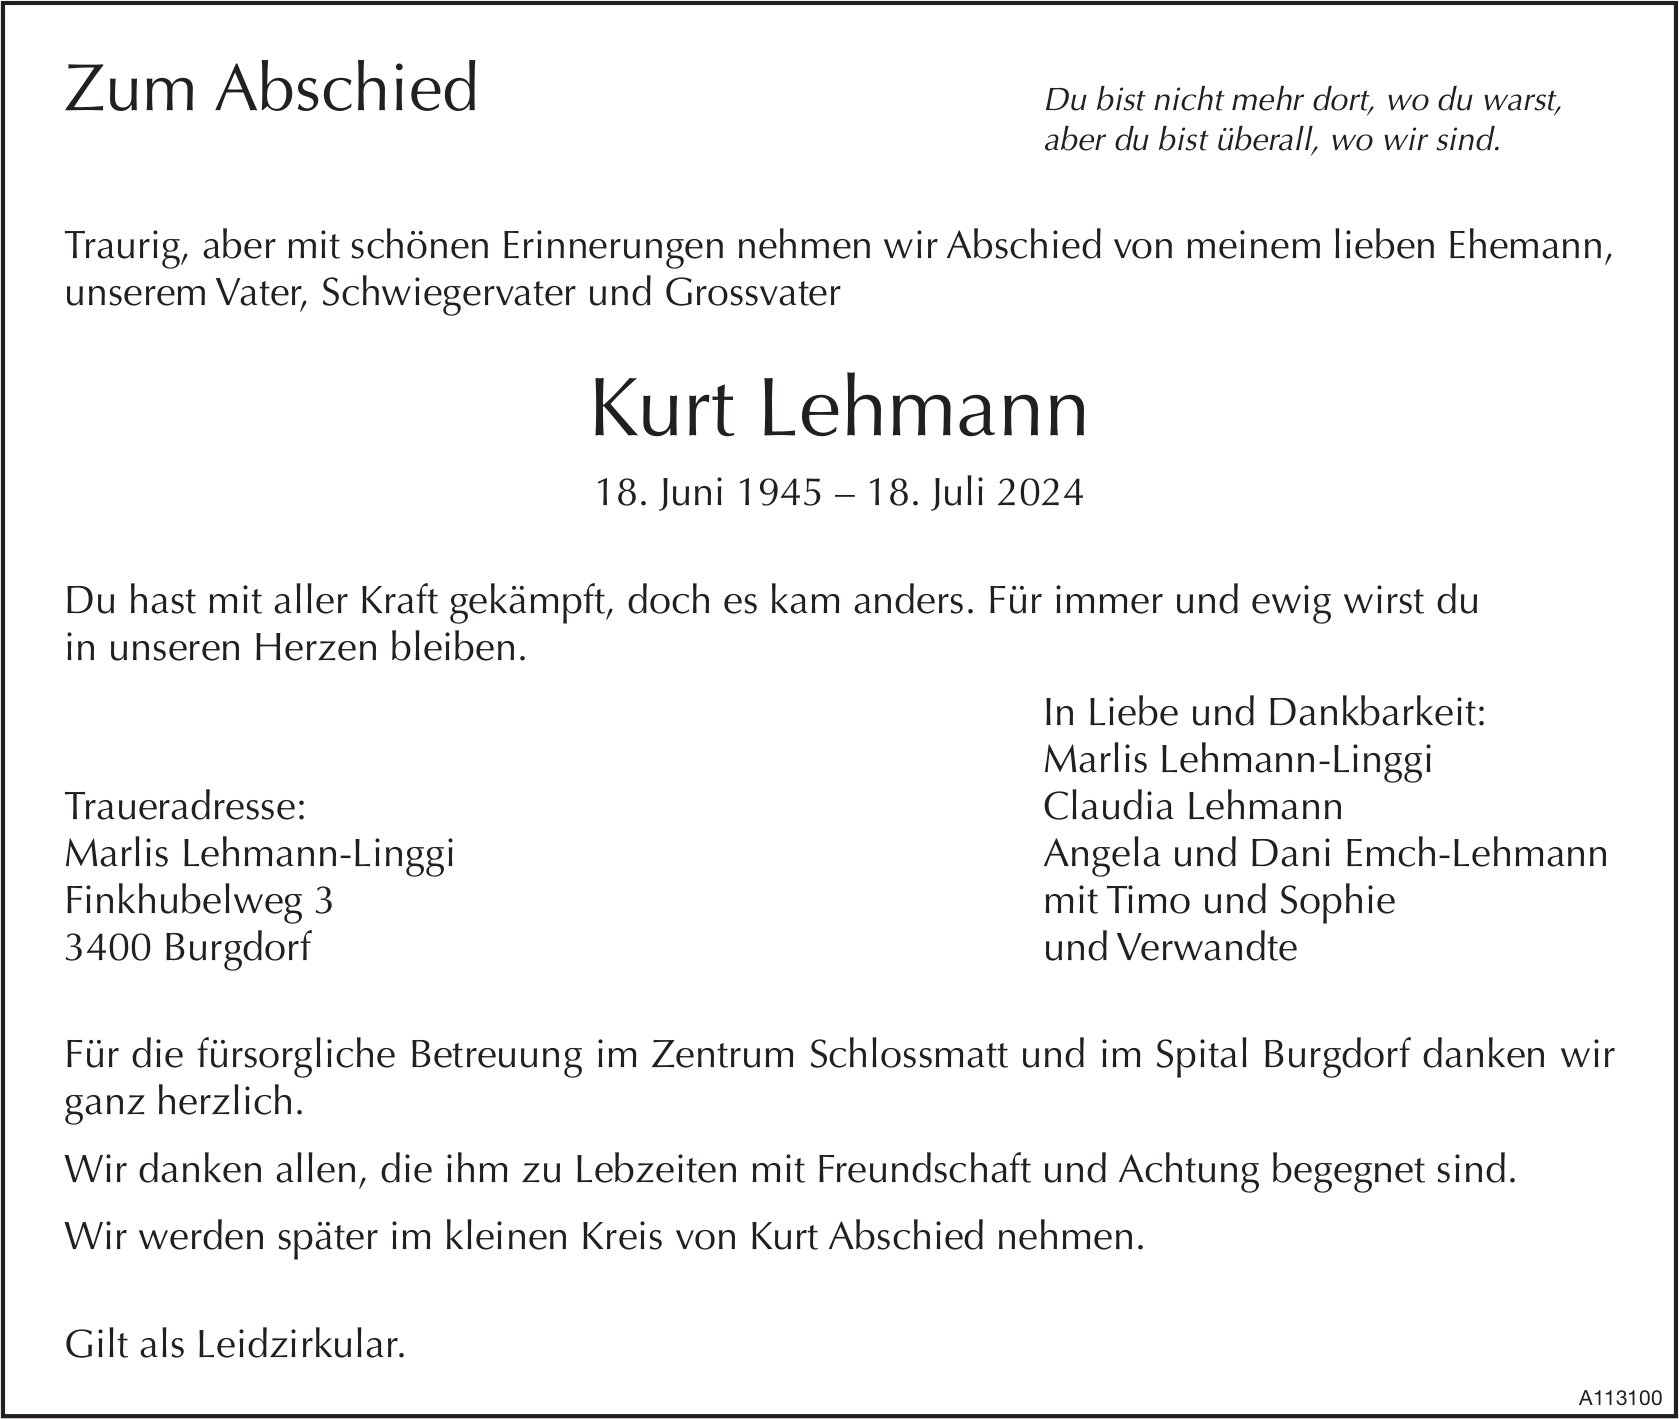 Kurt Lehmann, Juli 2024 / TA